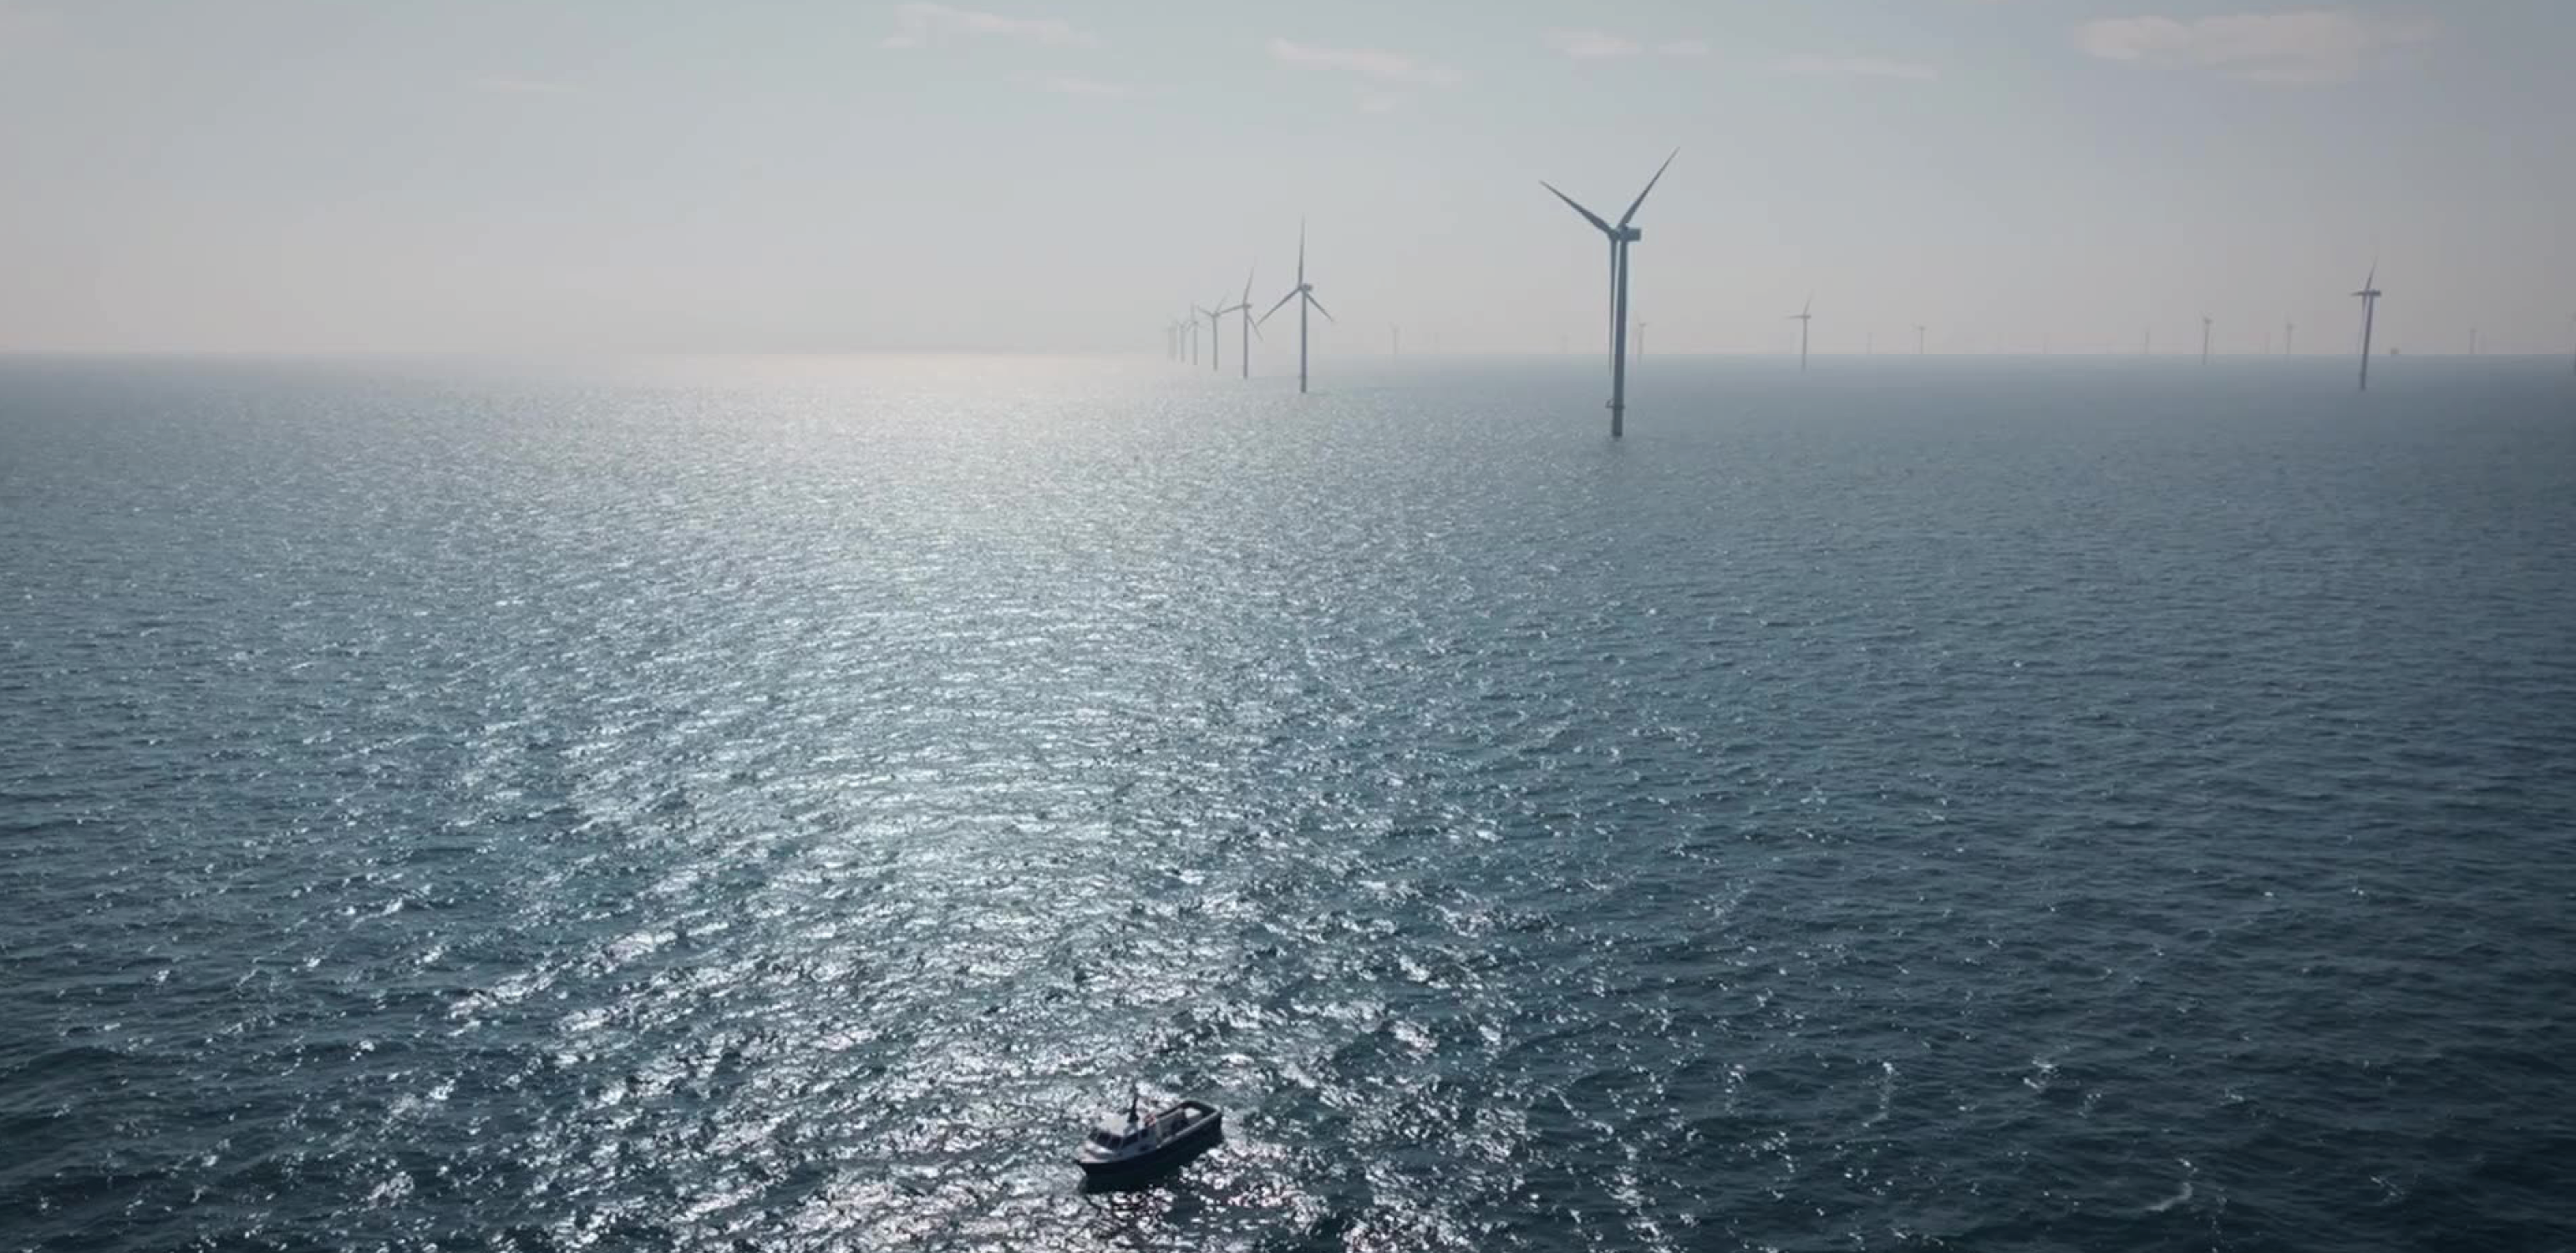 Zó werken we op zee naar een klimaatneutraal Nederland toe. 